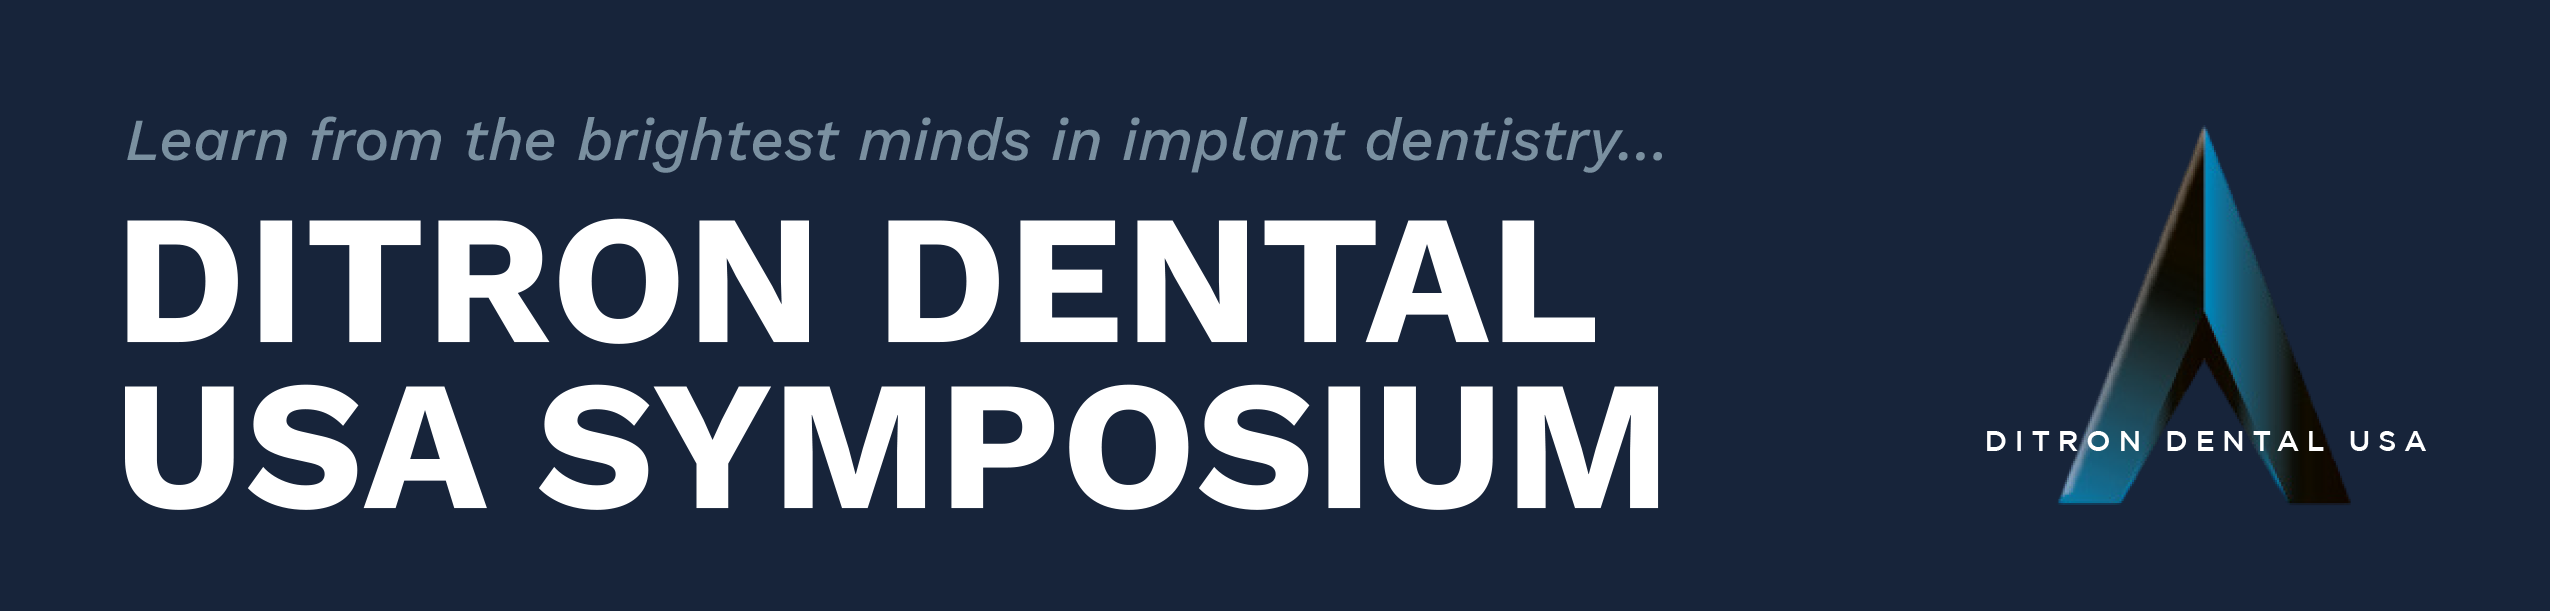 Ditron Dental USA Symposium Set for February